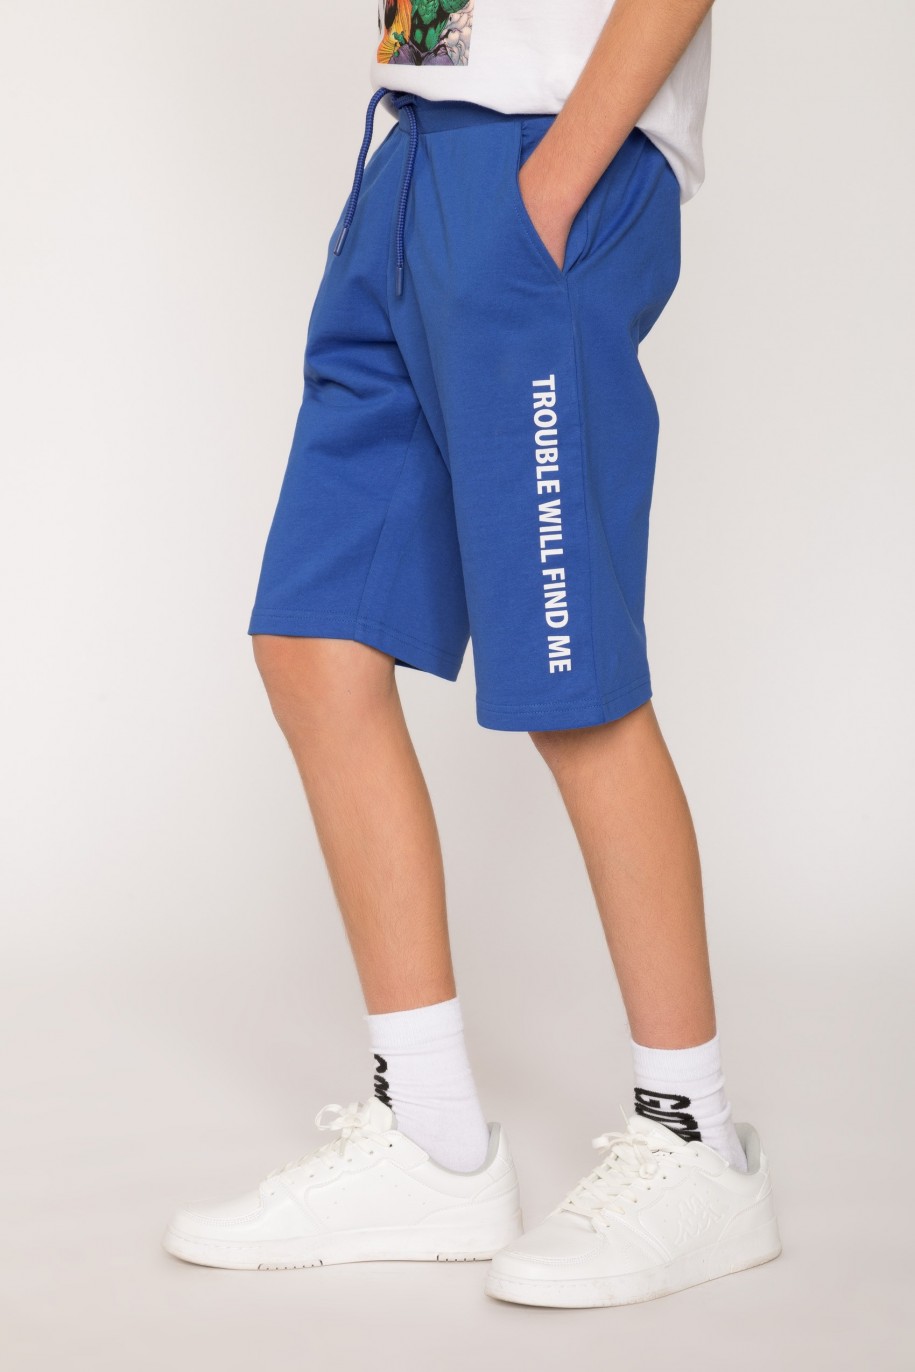 Niebieskie sportowe szorty dla chłopaka z nadrukami na nogawkach - 27065